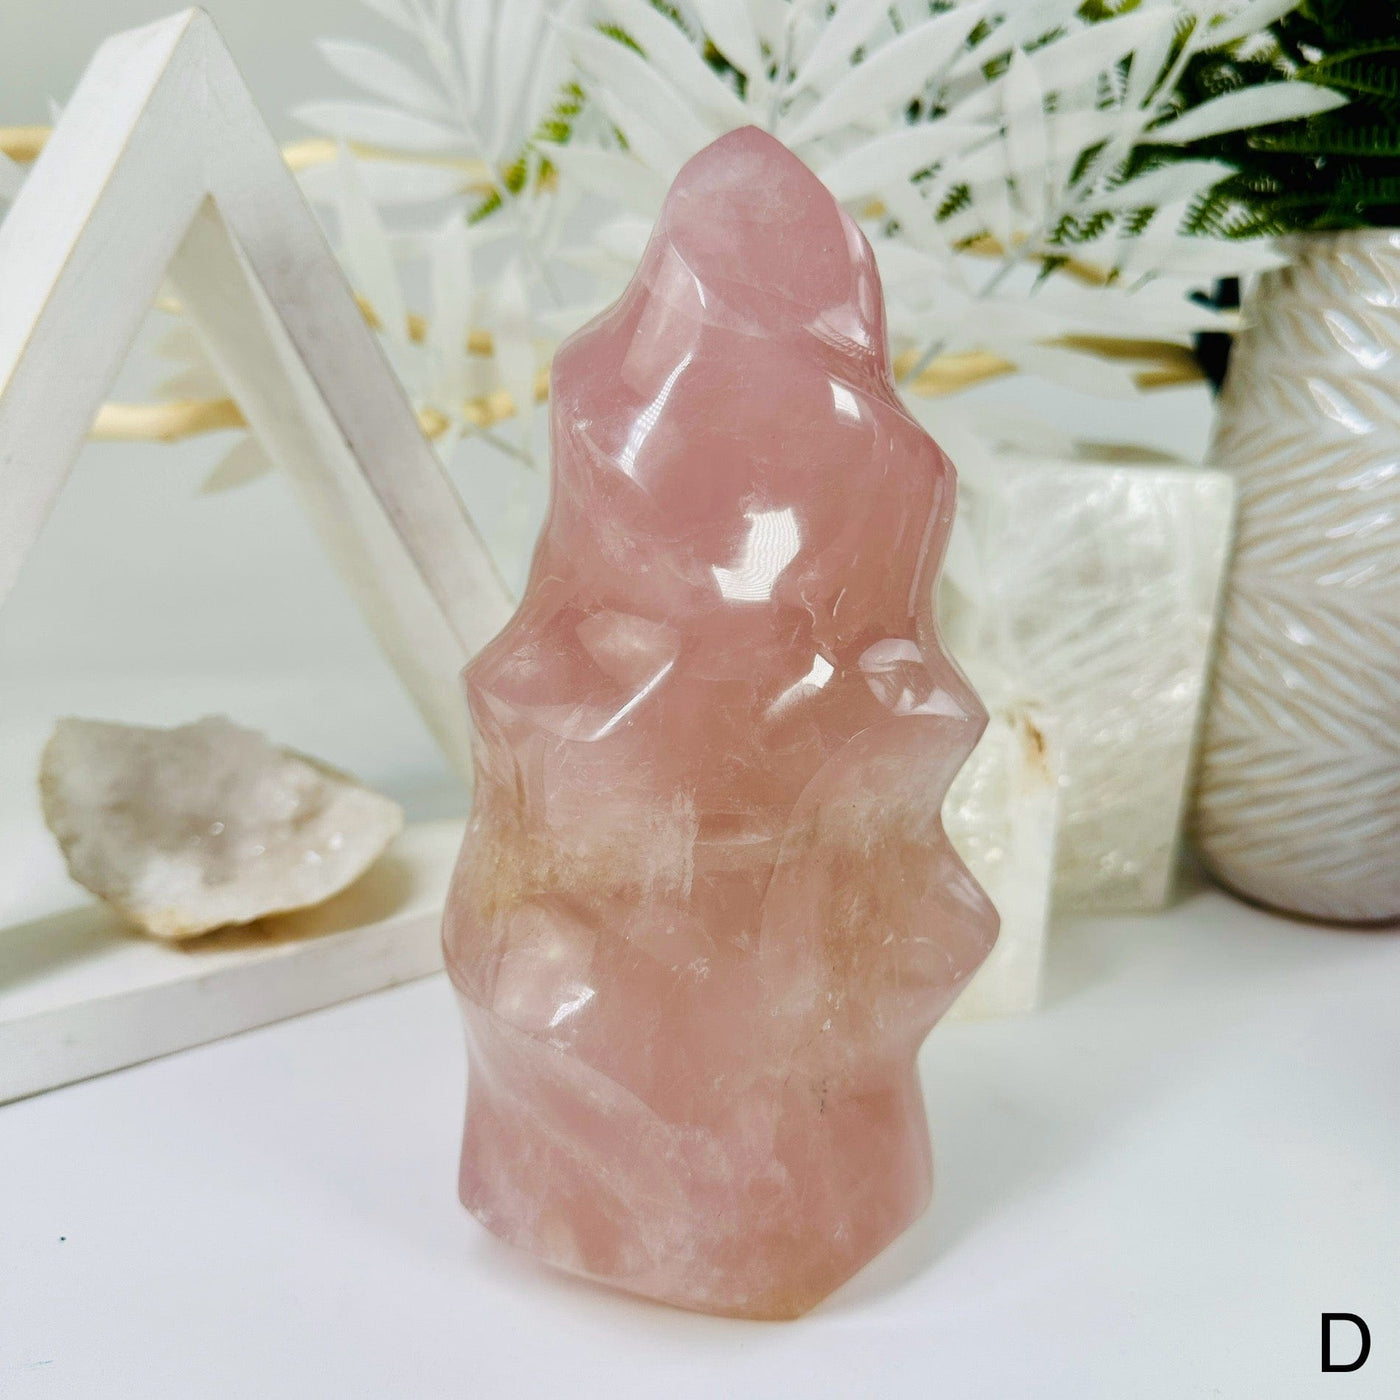 Rose Quartz Flame Tower - Carved Crystal - You Choose variant D labeled